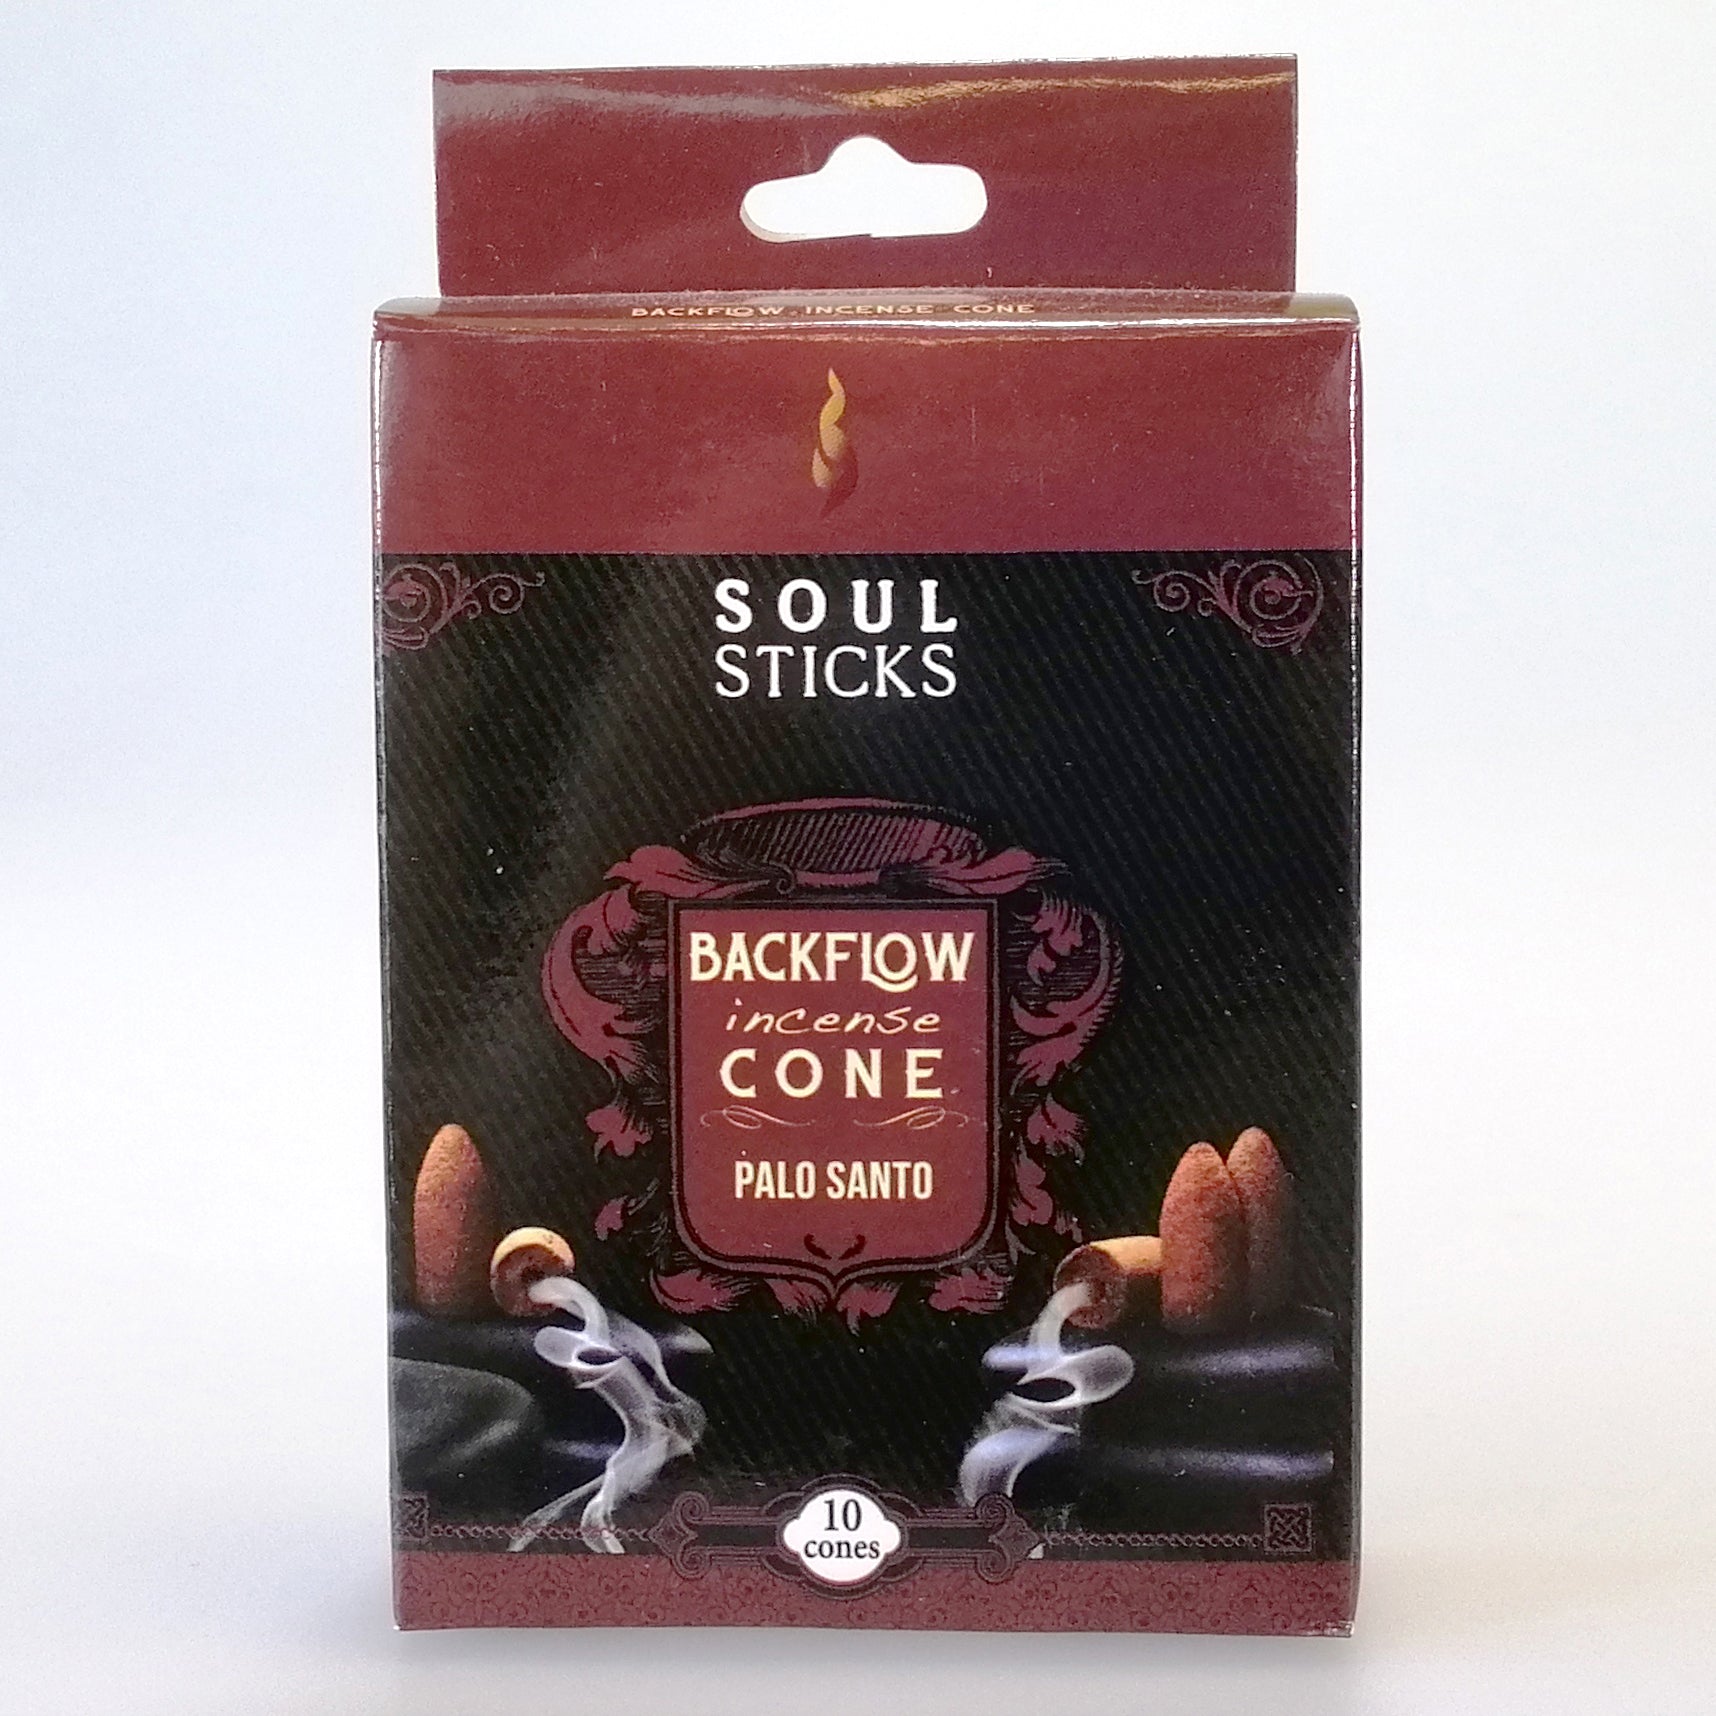 Soul Sticks Backflow Incense Cones - Palo Santo